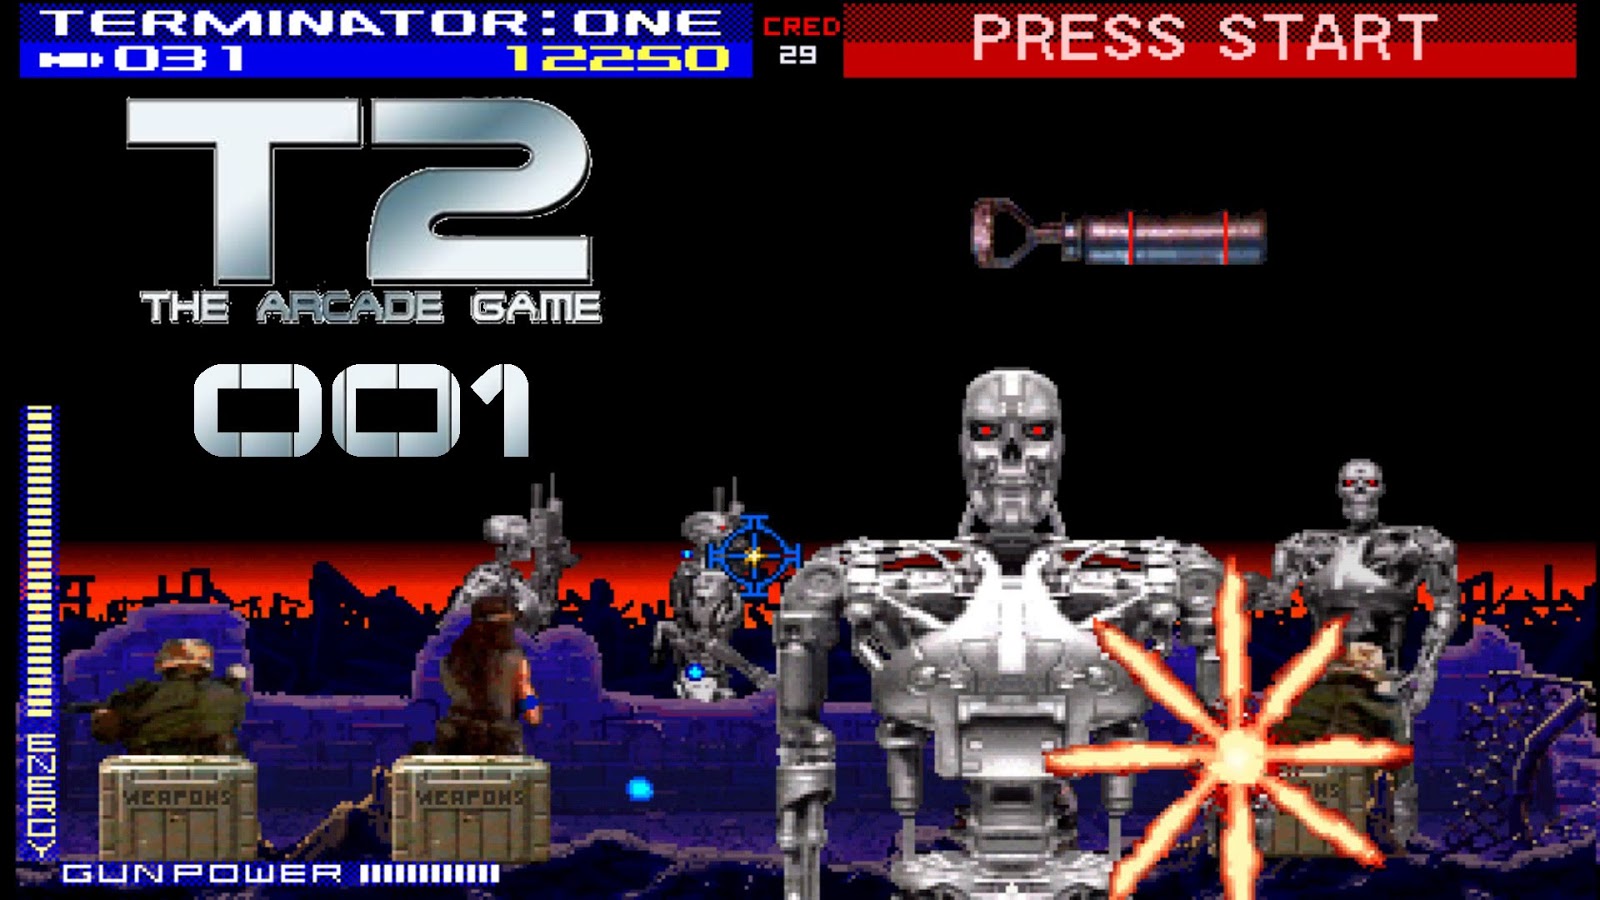 Terminator код. The Terminator игра 1991. Терминатор 2 аркада сега. Терминатор 2 сега СД. Терминатор 2 Arcade game 1991.